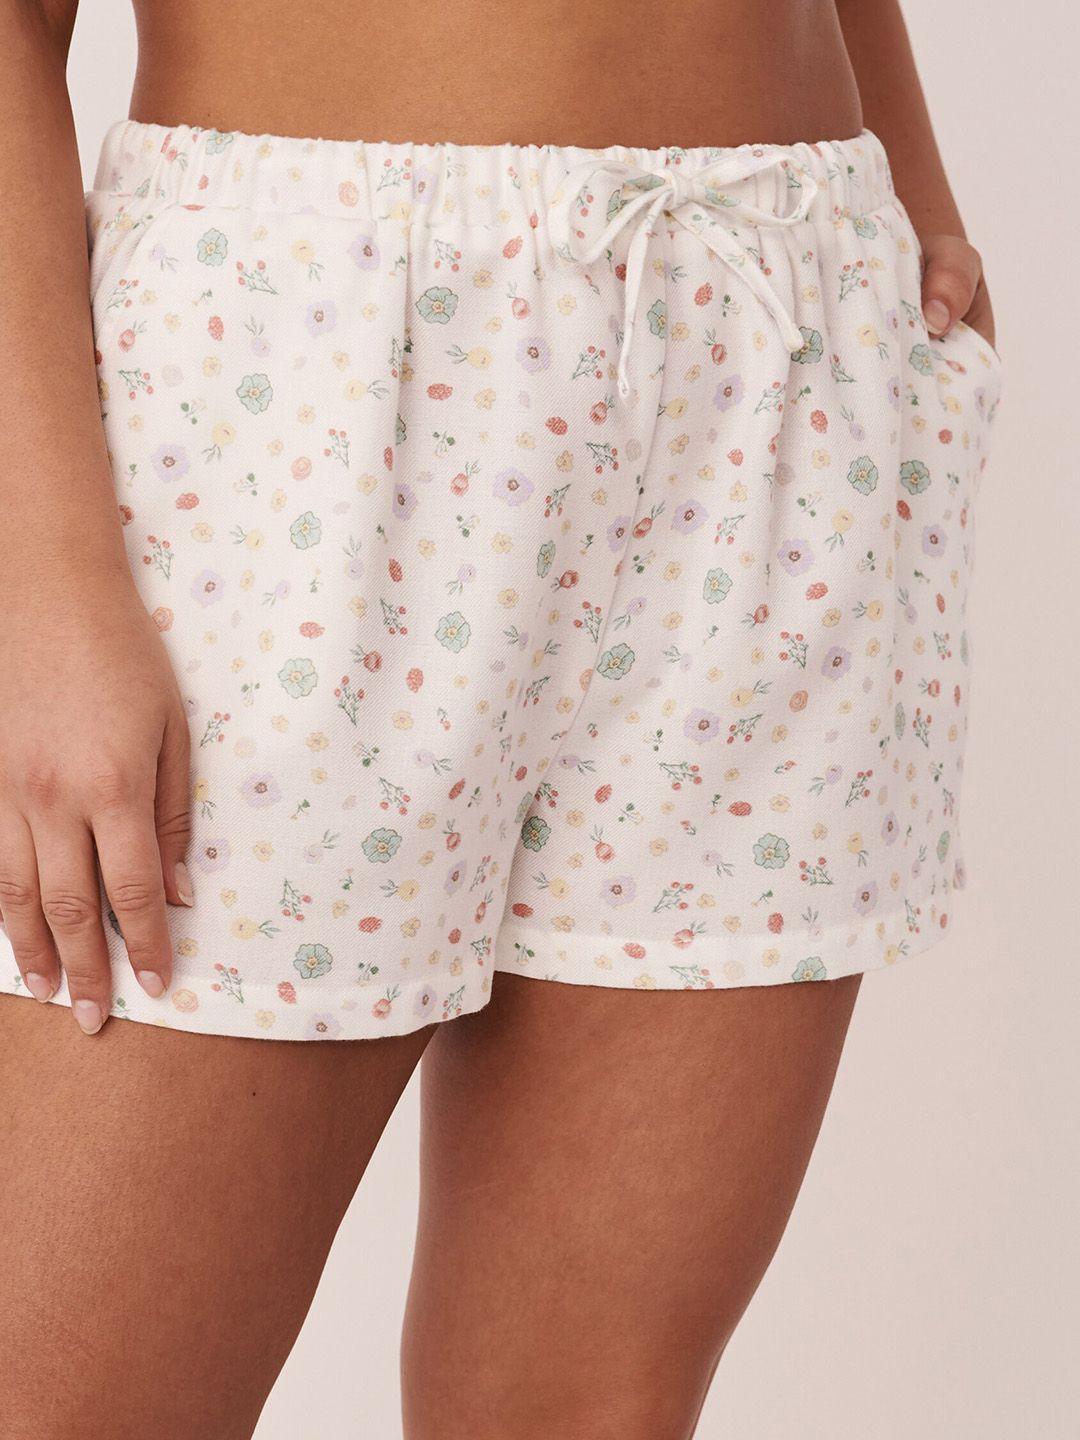 la vie en rose women floral printed mid-rise shorts